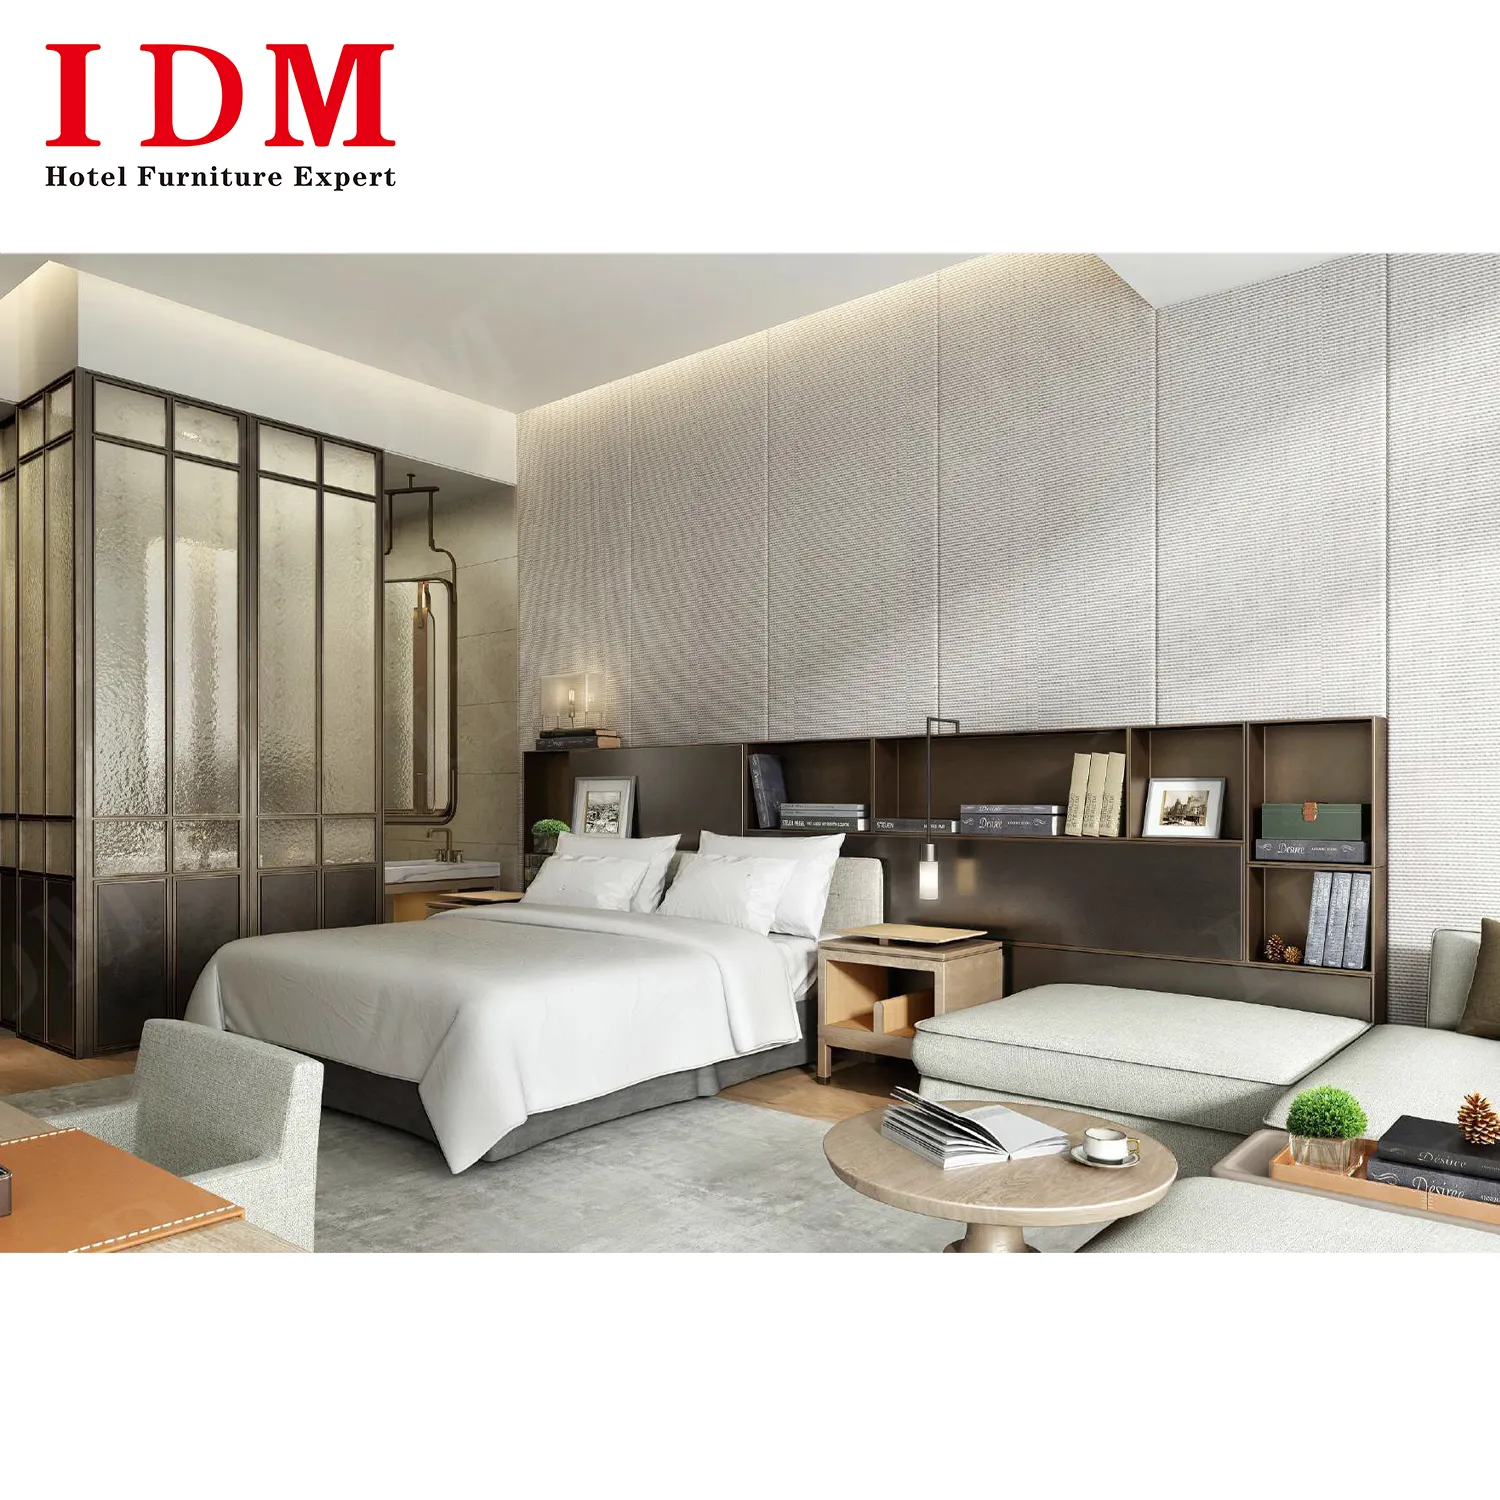 Sang trọng thiết kế hiện đại khách sạn đồ nội thất phòng ngủ bộ trong gỗ cho phòng ngủ căn hộ hoặc biệt thự sử dụng